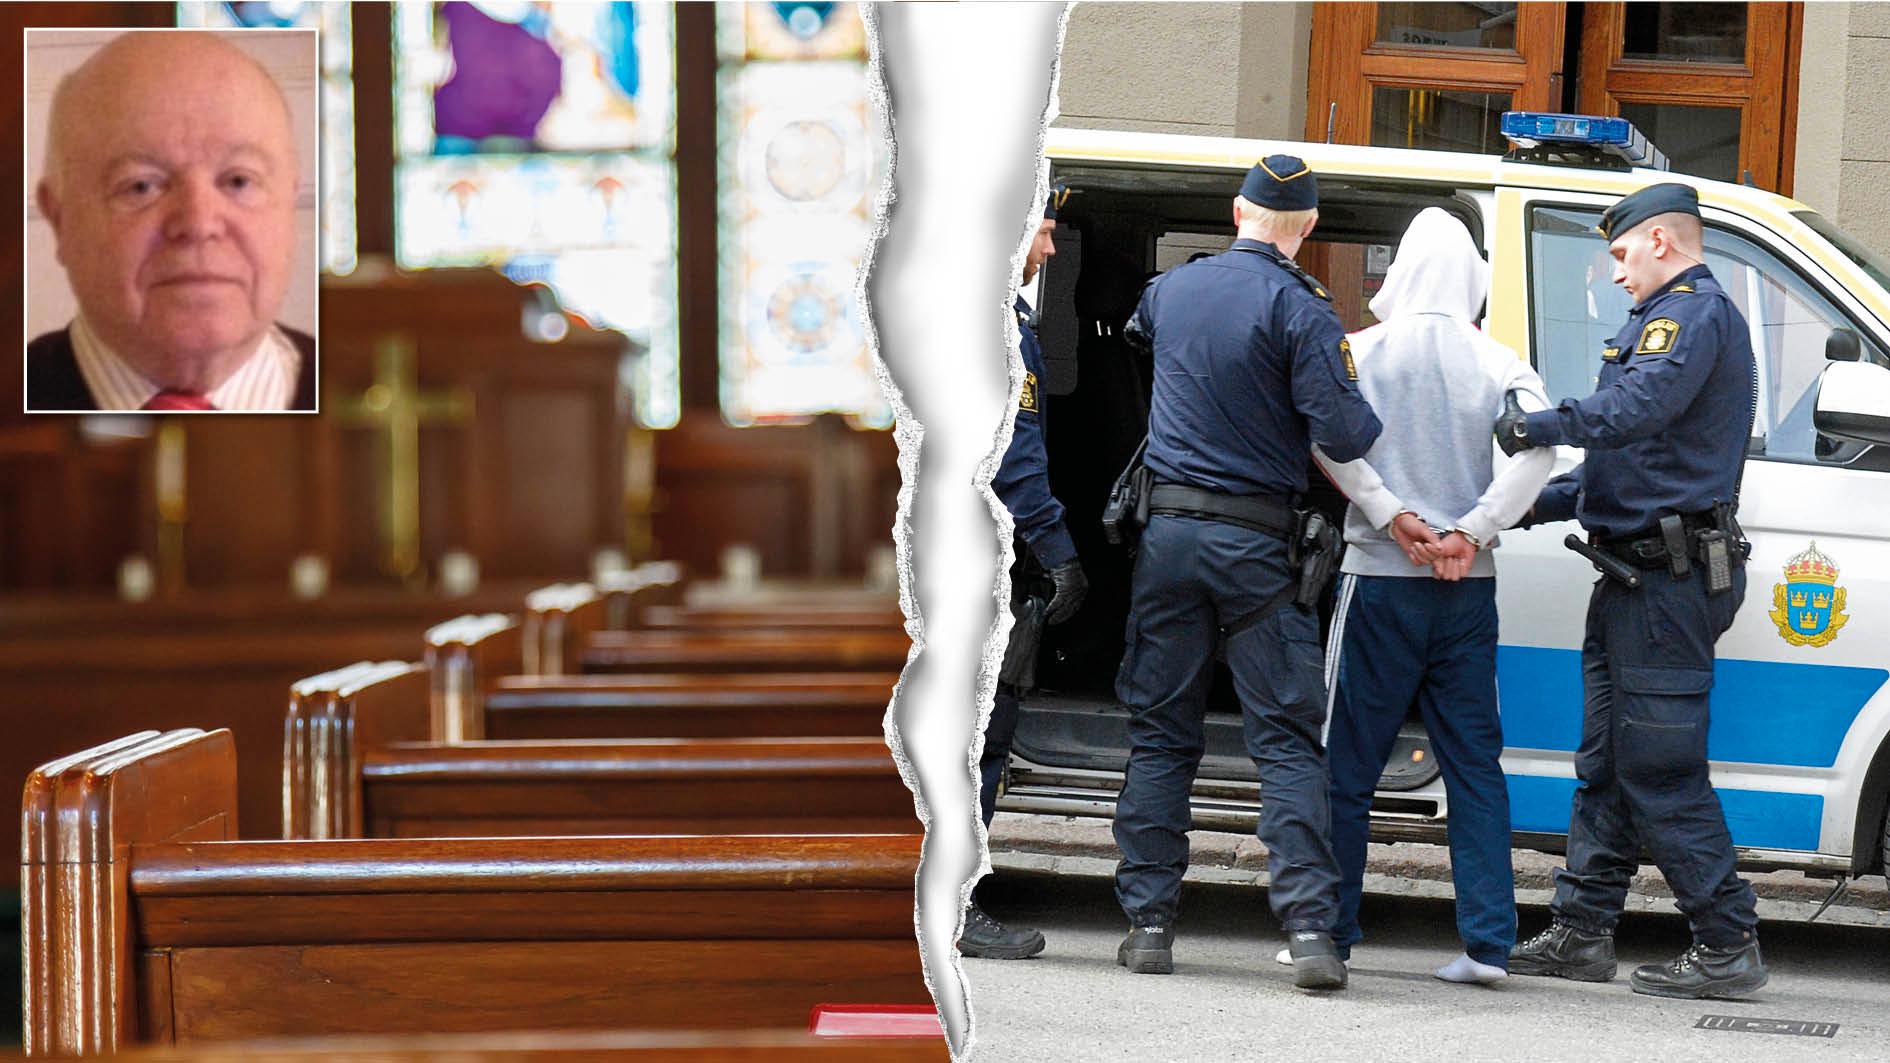 Stäng hälften av de 3 400 kyrkorna i Sverige för gudstjänster på söndagar. Då får vi loss 1 700 präster som kan planera och genomföra positiv fritidsverksamhet i konkurrens med de kriminella gängen, skriver Per-Ola Larsson.